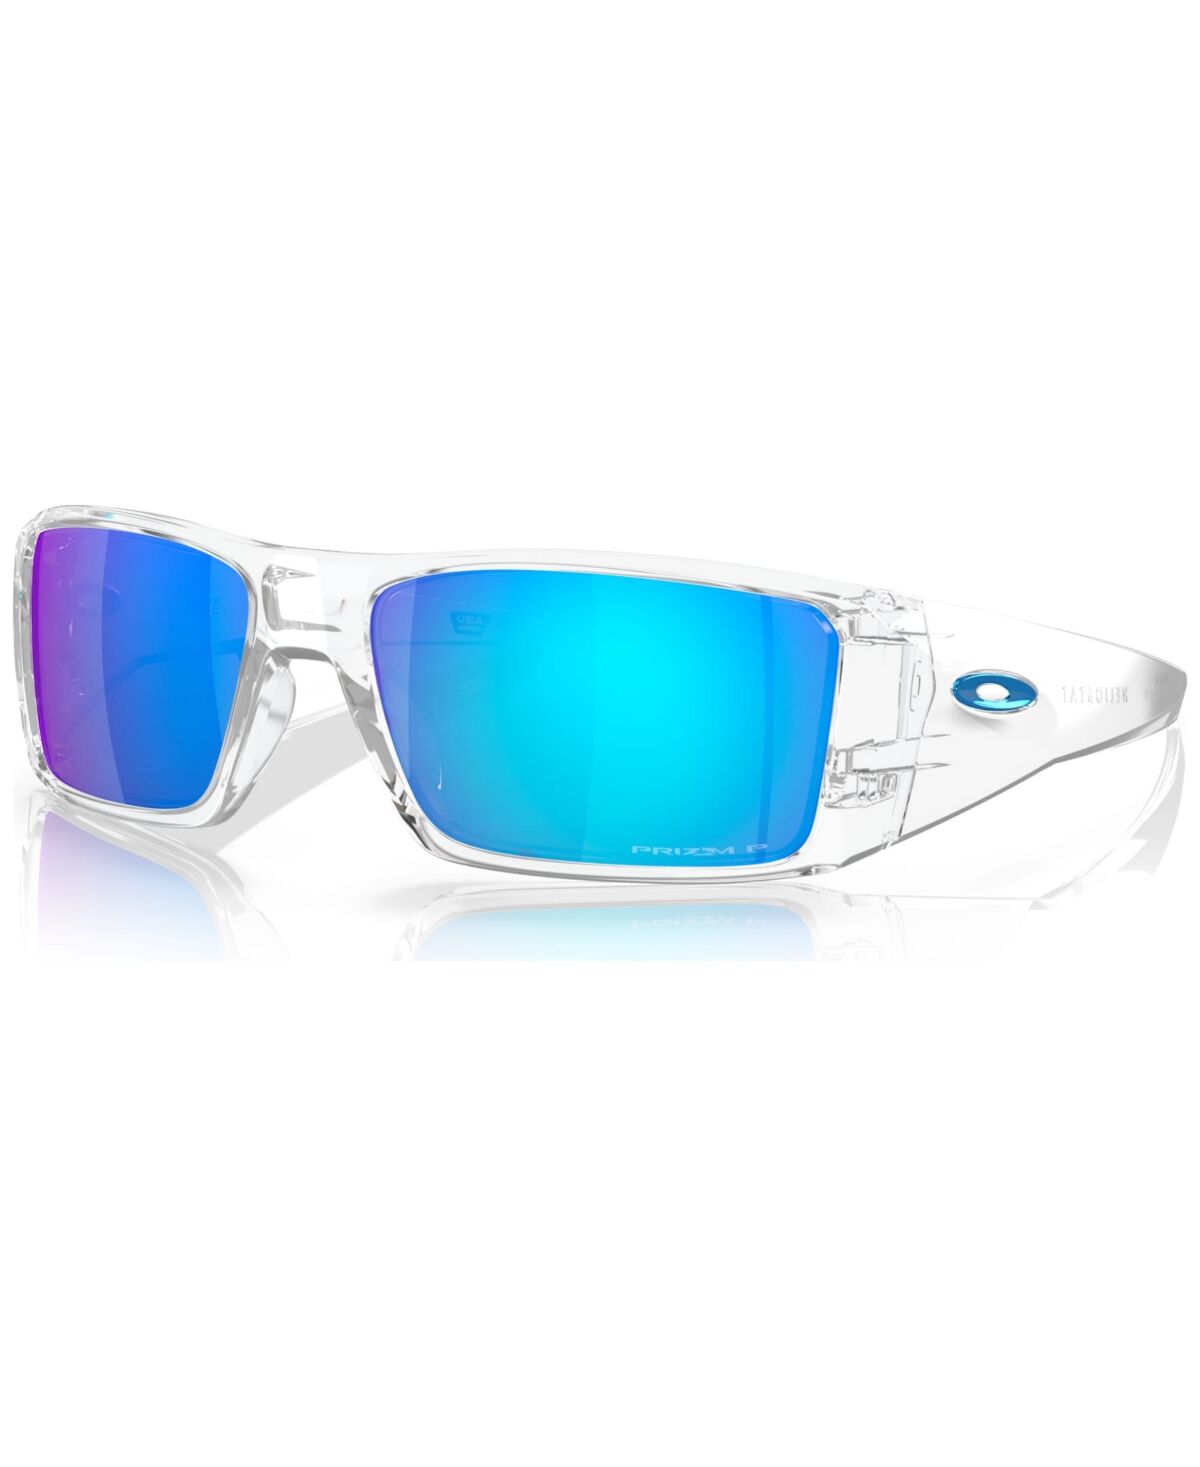 Oakley Men's Polarized Sunglasses, Heliostat - Clear